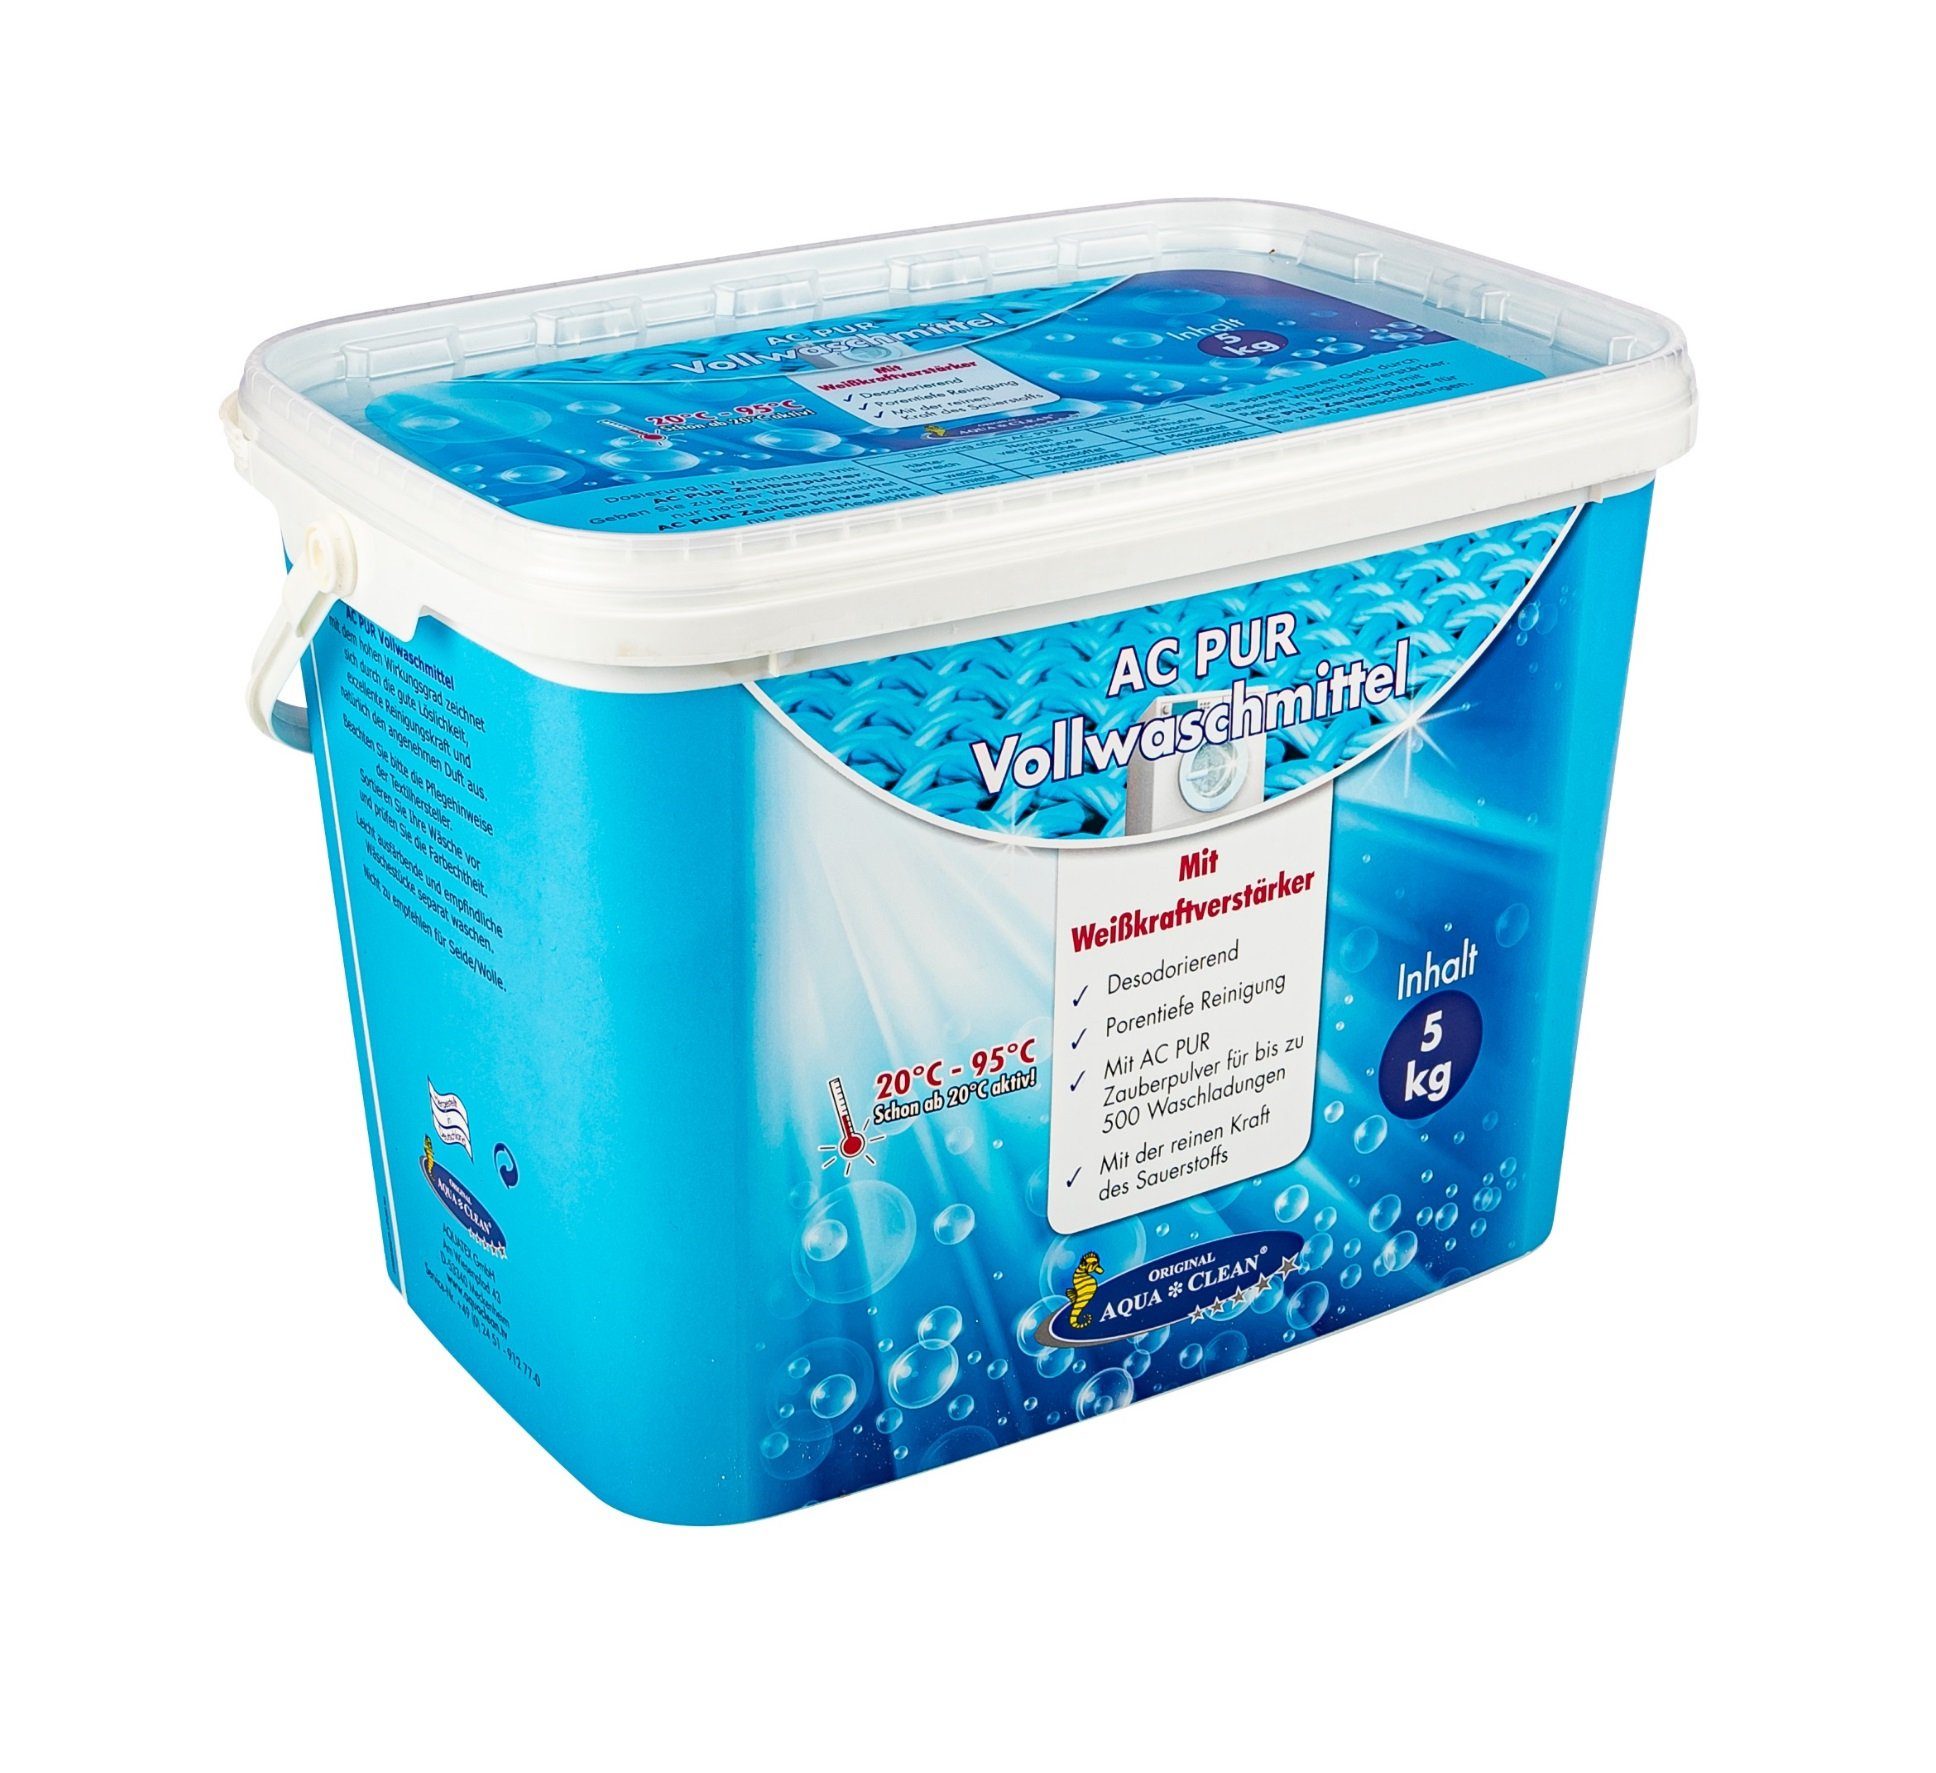 AQUA CLEAN AC PUR Vollwaschmittel Vollwaschmittel (mit Farb-& Faserschutz und Weisskraftverstärker 5kg)